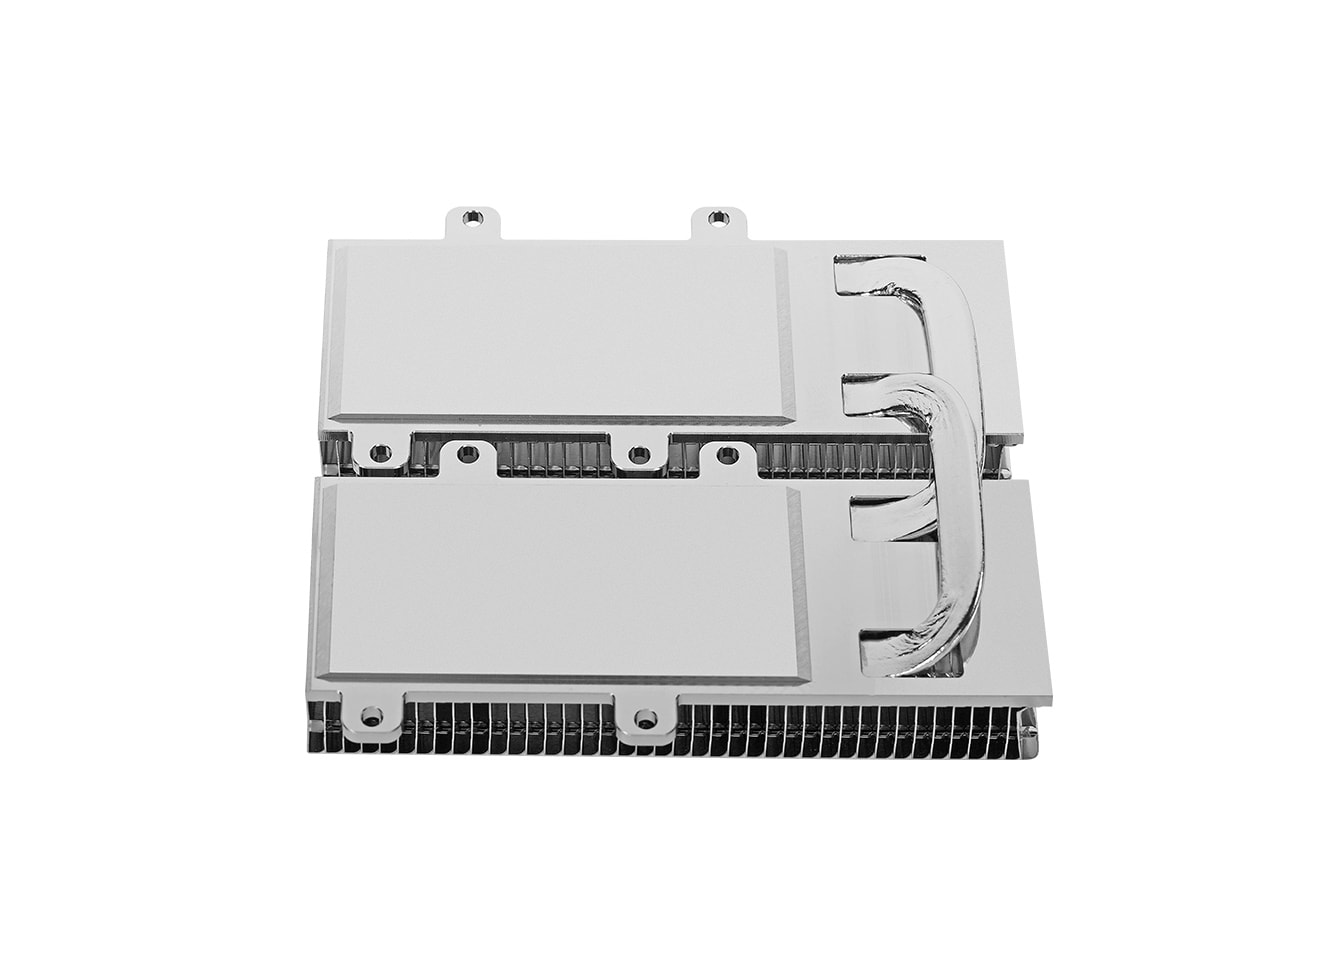 LM2-200GbMXP CFP2 Heat Sink